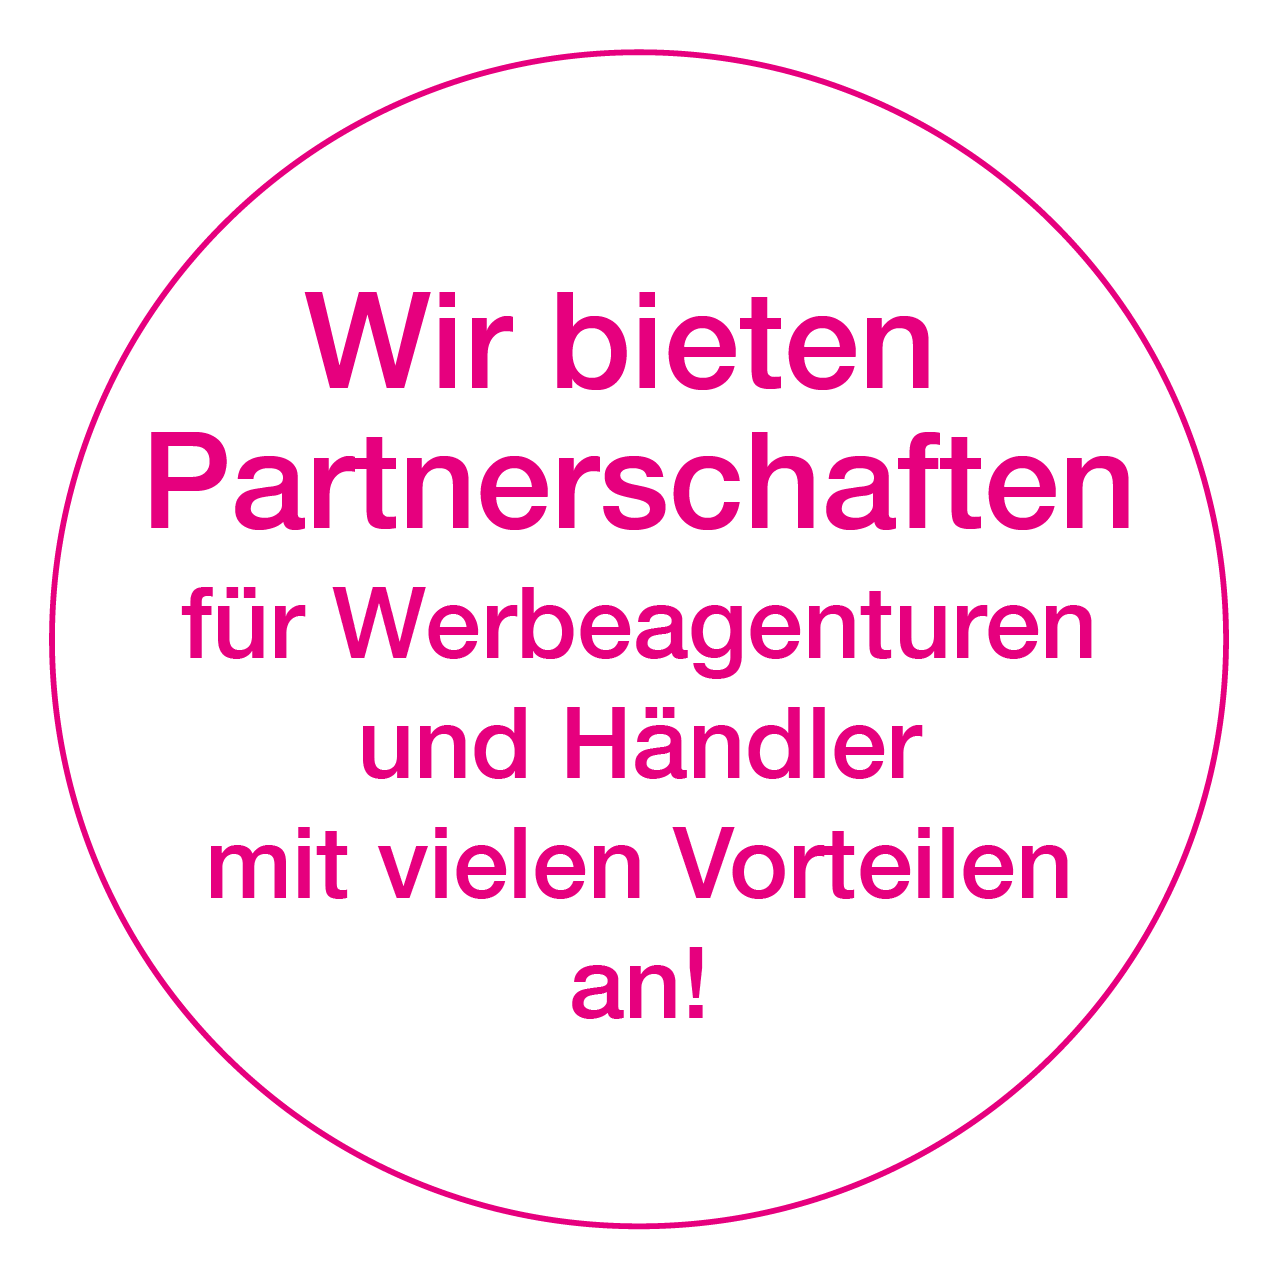 A pink circle with the words wir bieten partnerschaften for werbeagenturen and handler mit vielen vorteilen an